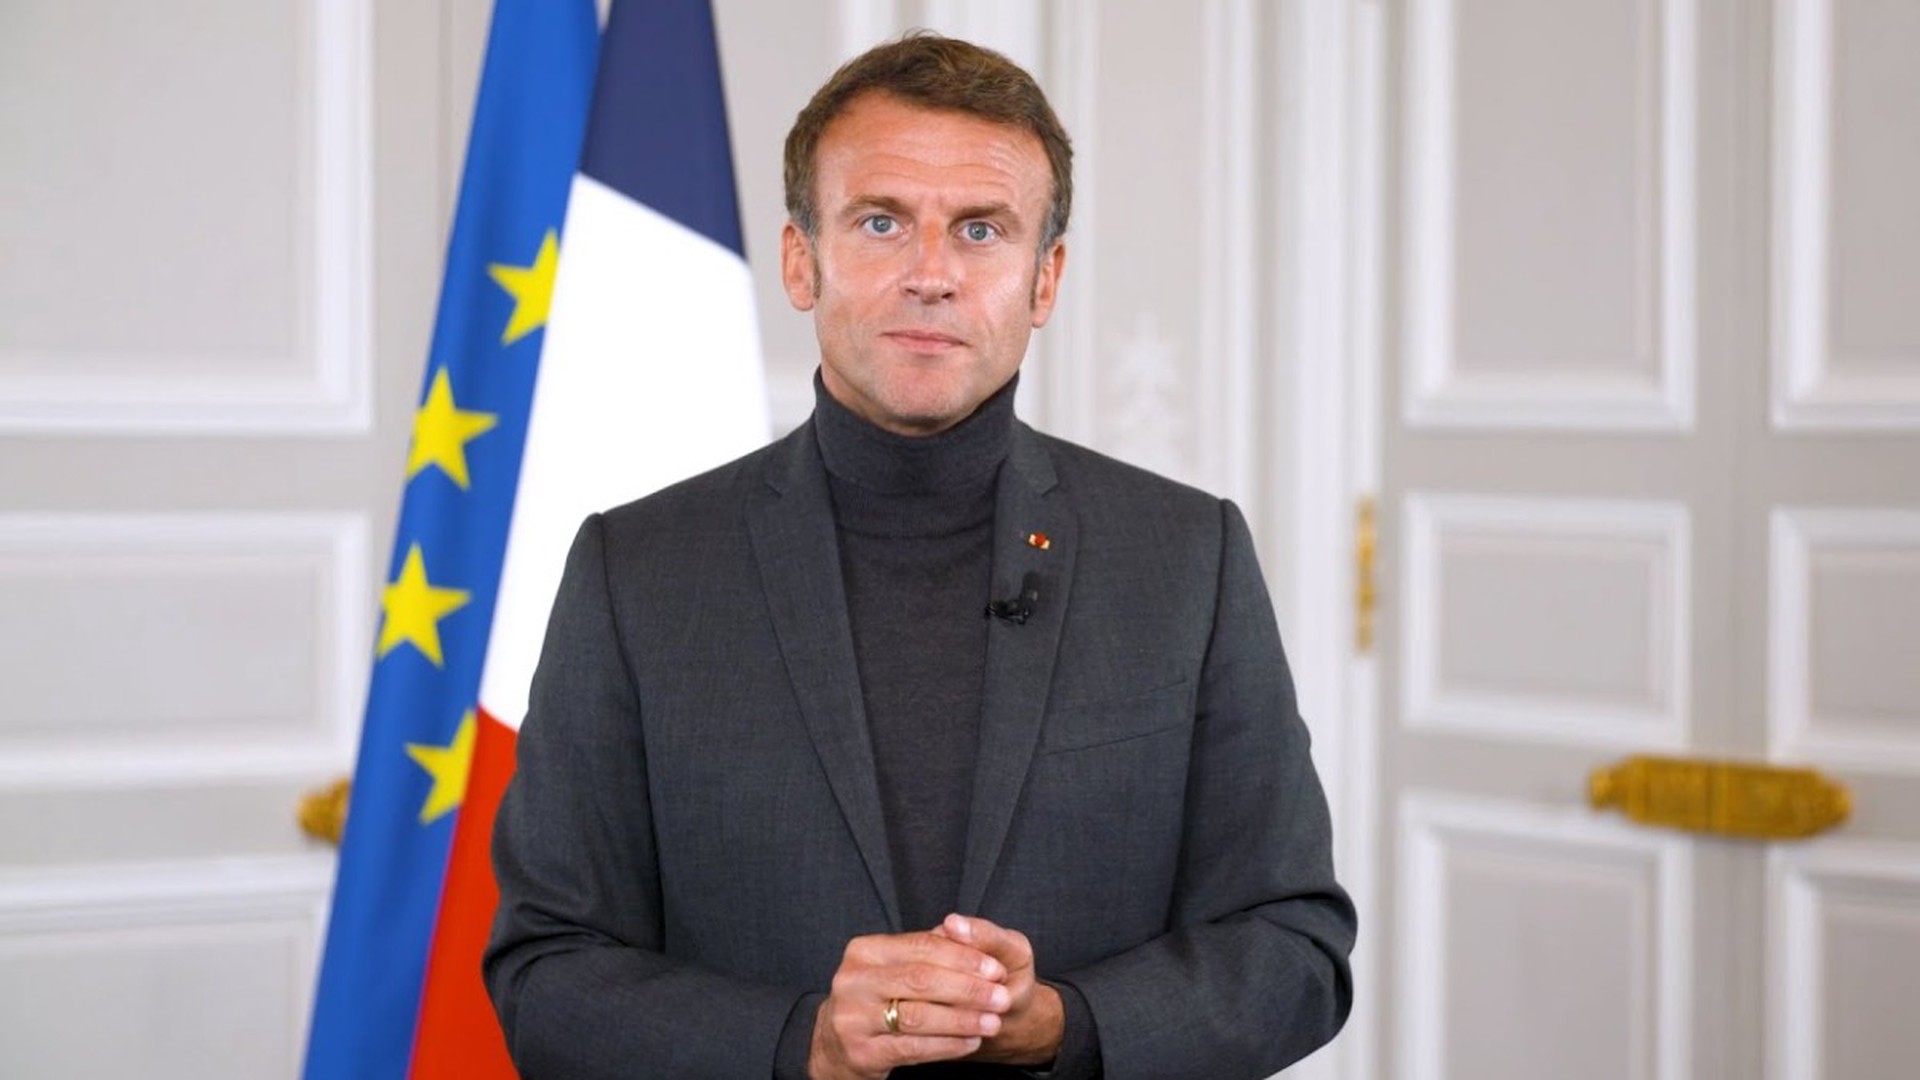 BFM TV: Макрон призвал министров сделать всё возможное для установления порядка во Франции